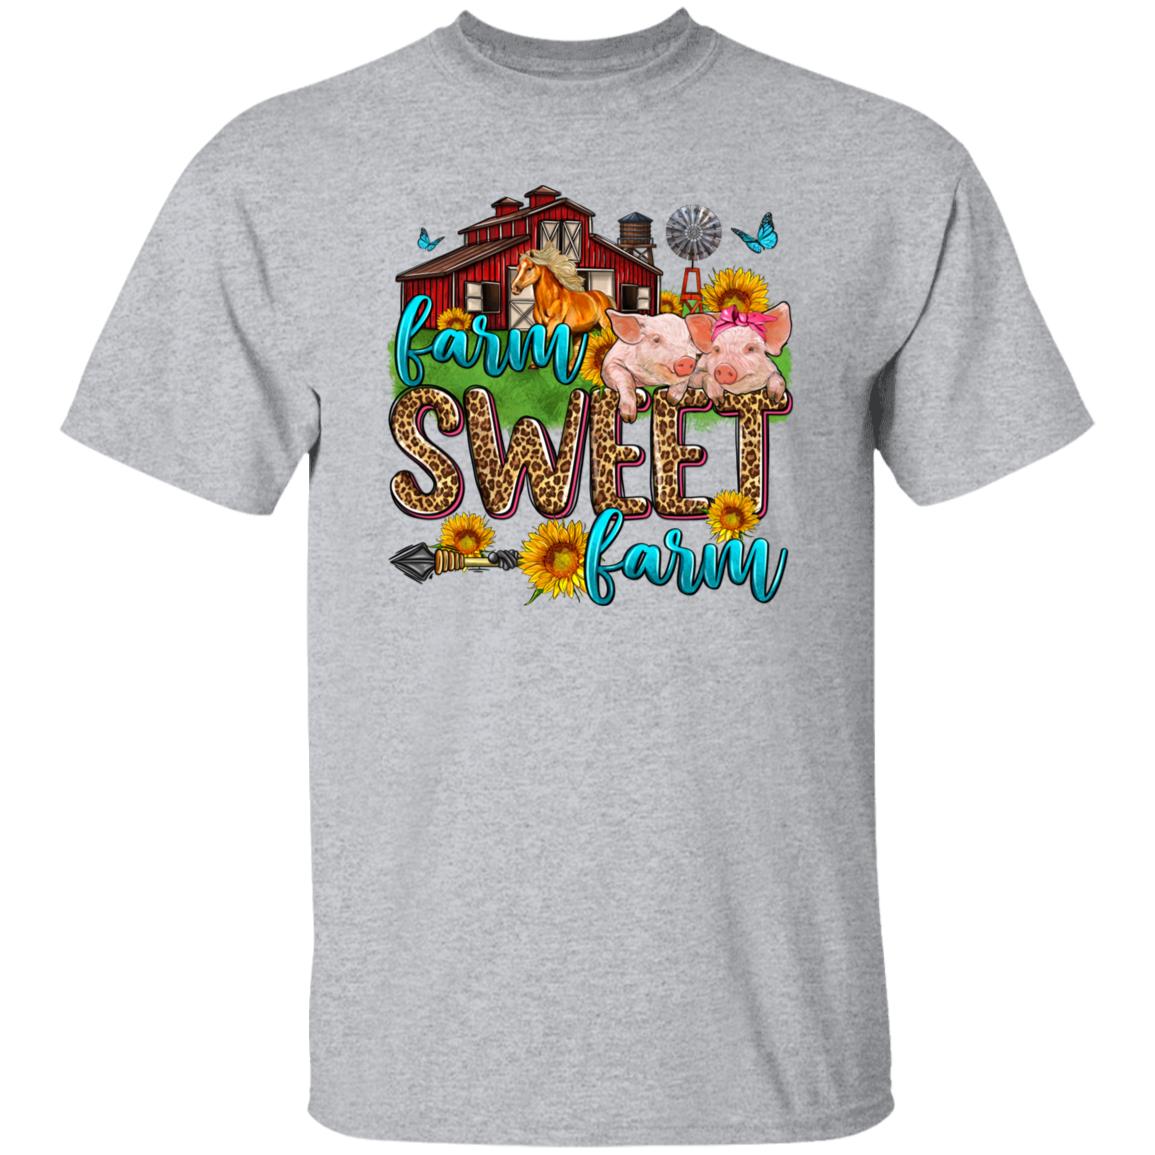 Farm sweet farm T-Shirt gift Country side farmer girl farm owner Unisex tee Sand White Sport Grey-Family-Gift-Planet